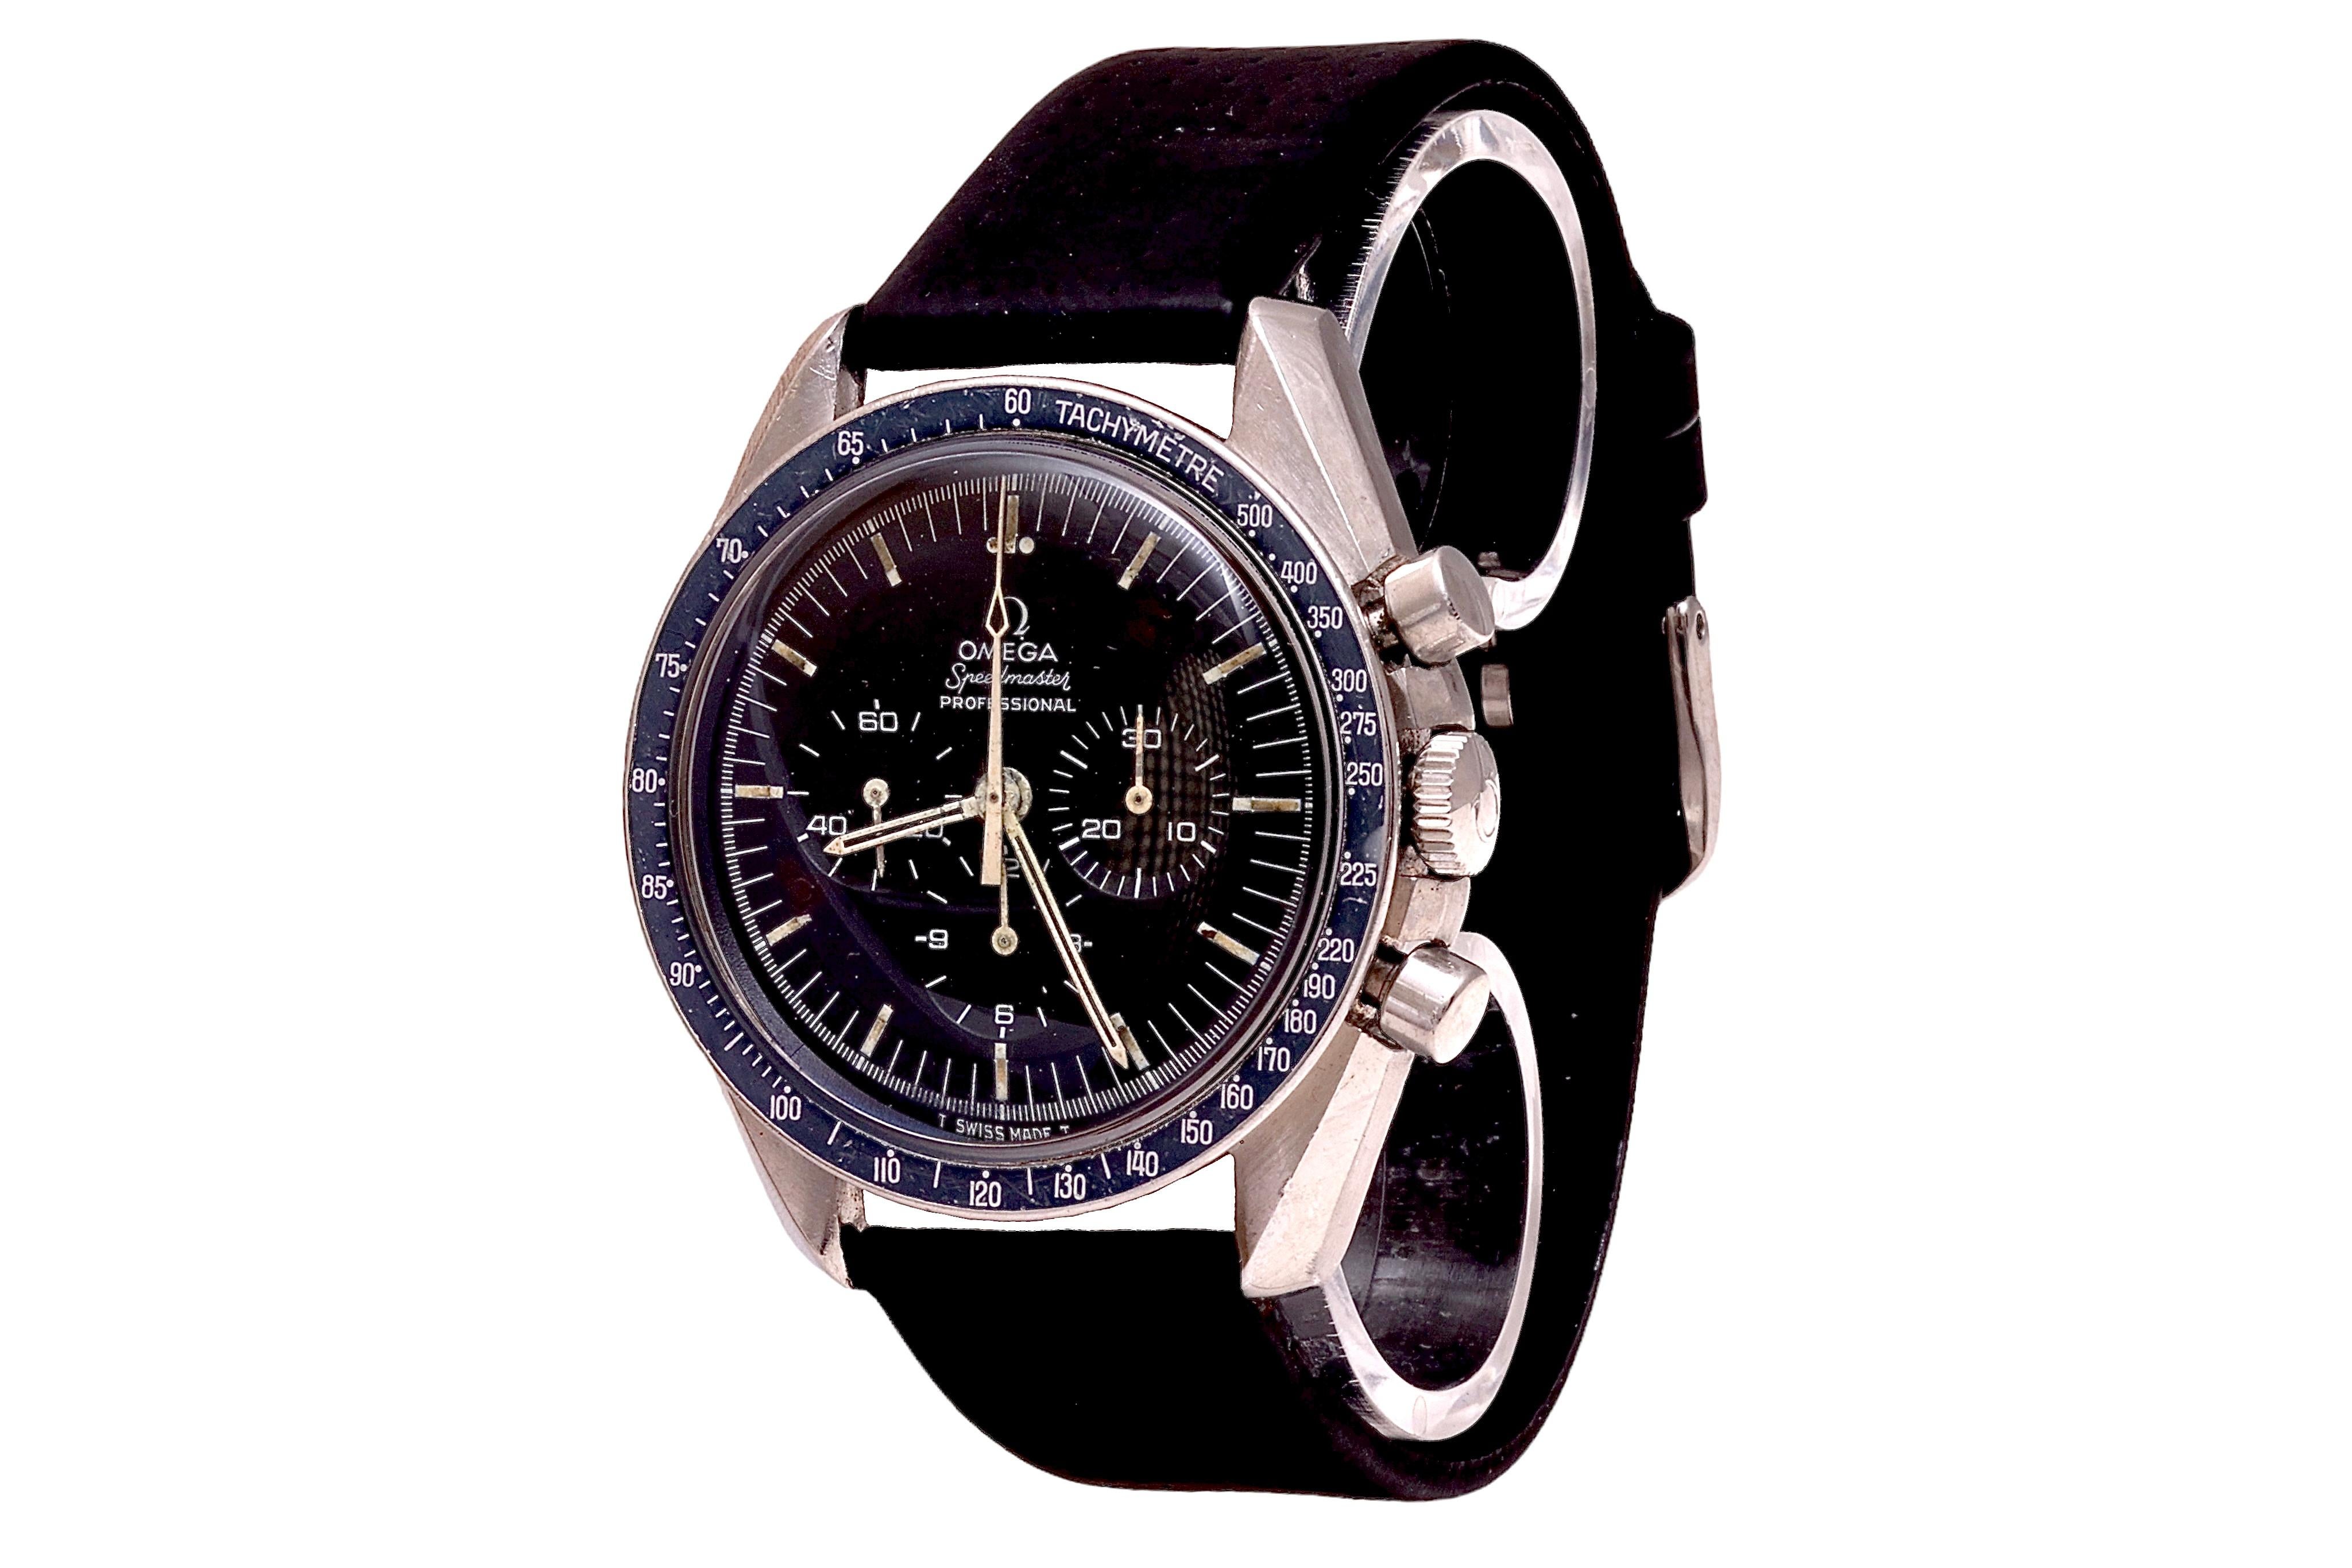 Omega Speedmaster, montre-bracelet chronographe vintage en acier des années 1970, réf. ST145.022

Avec un extrait d'oméga provenant des archives